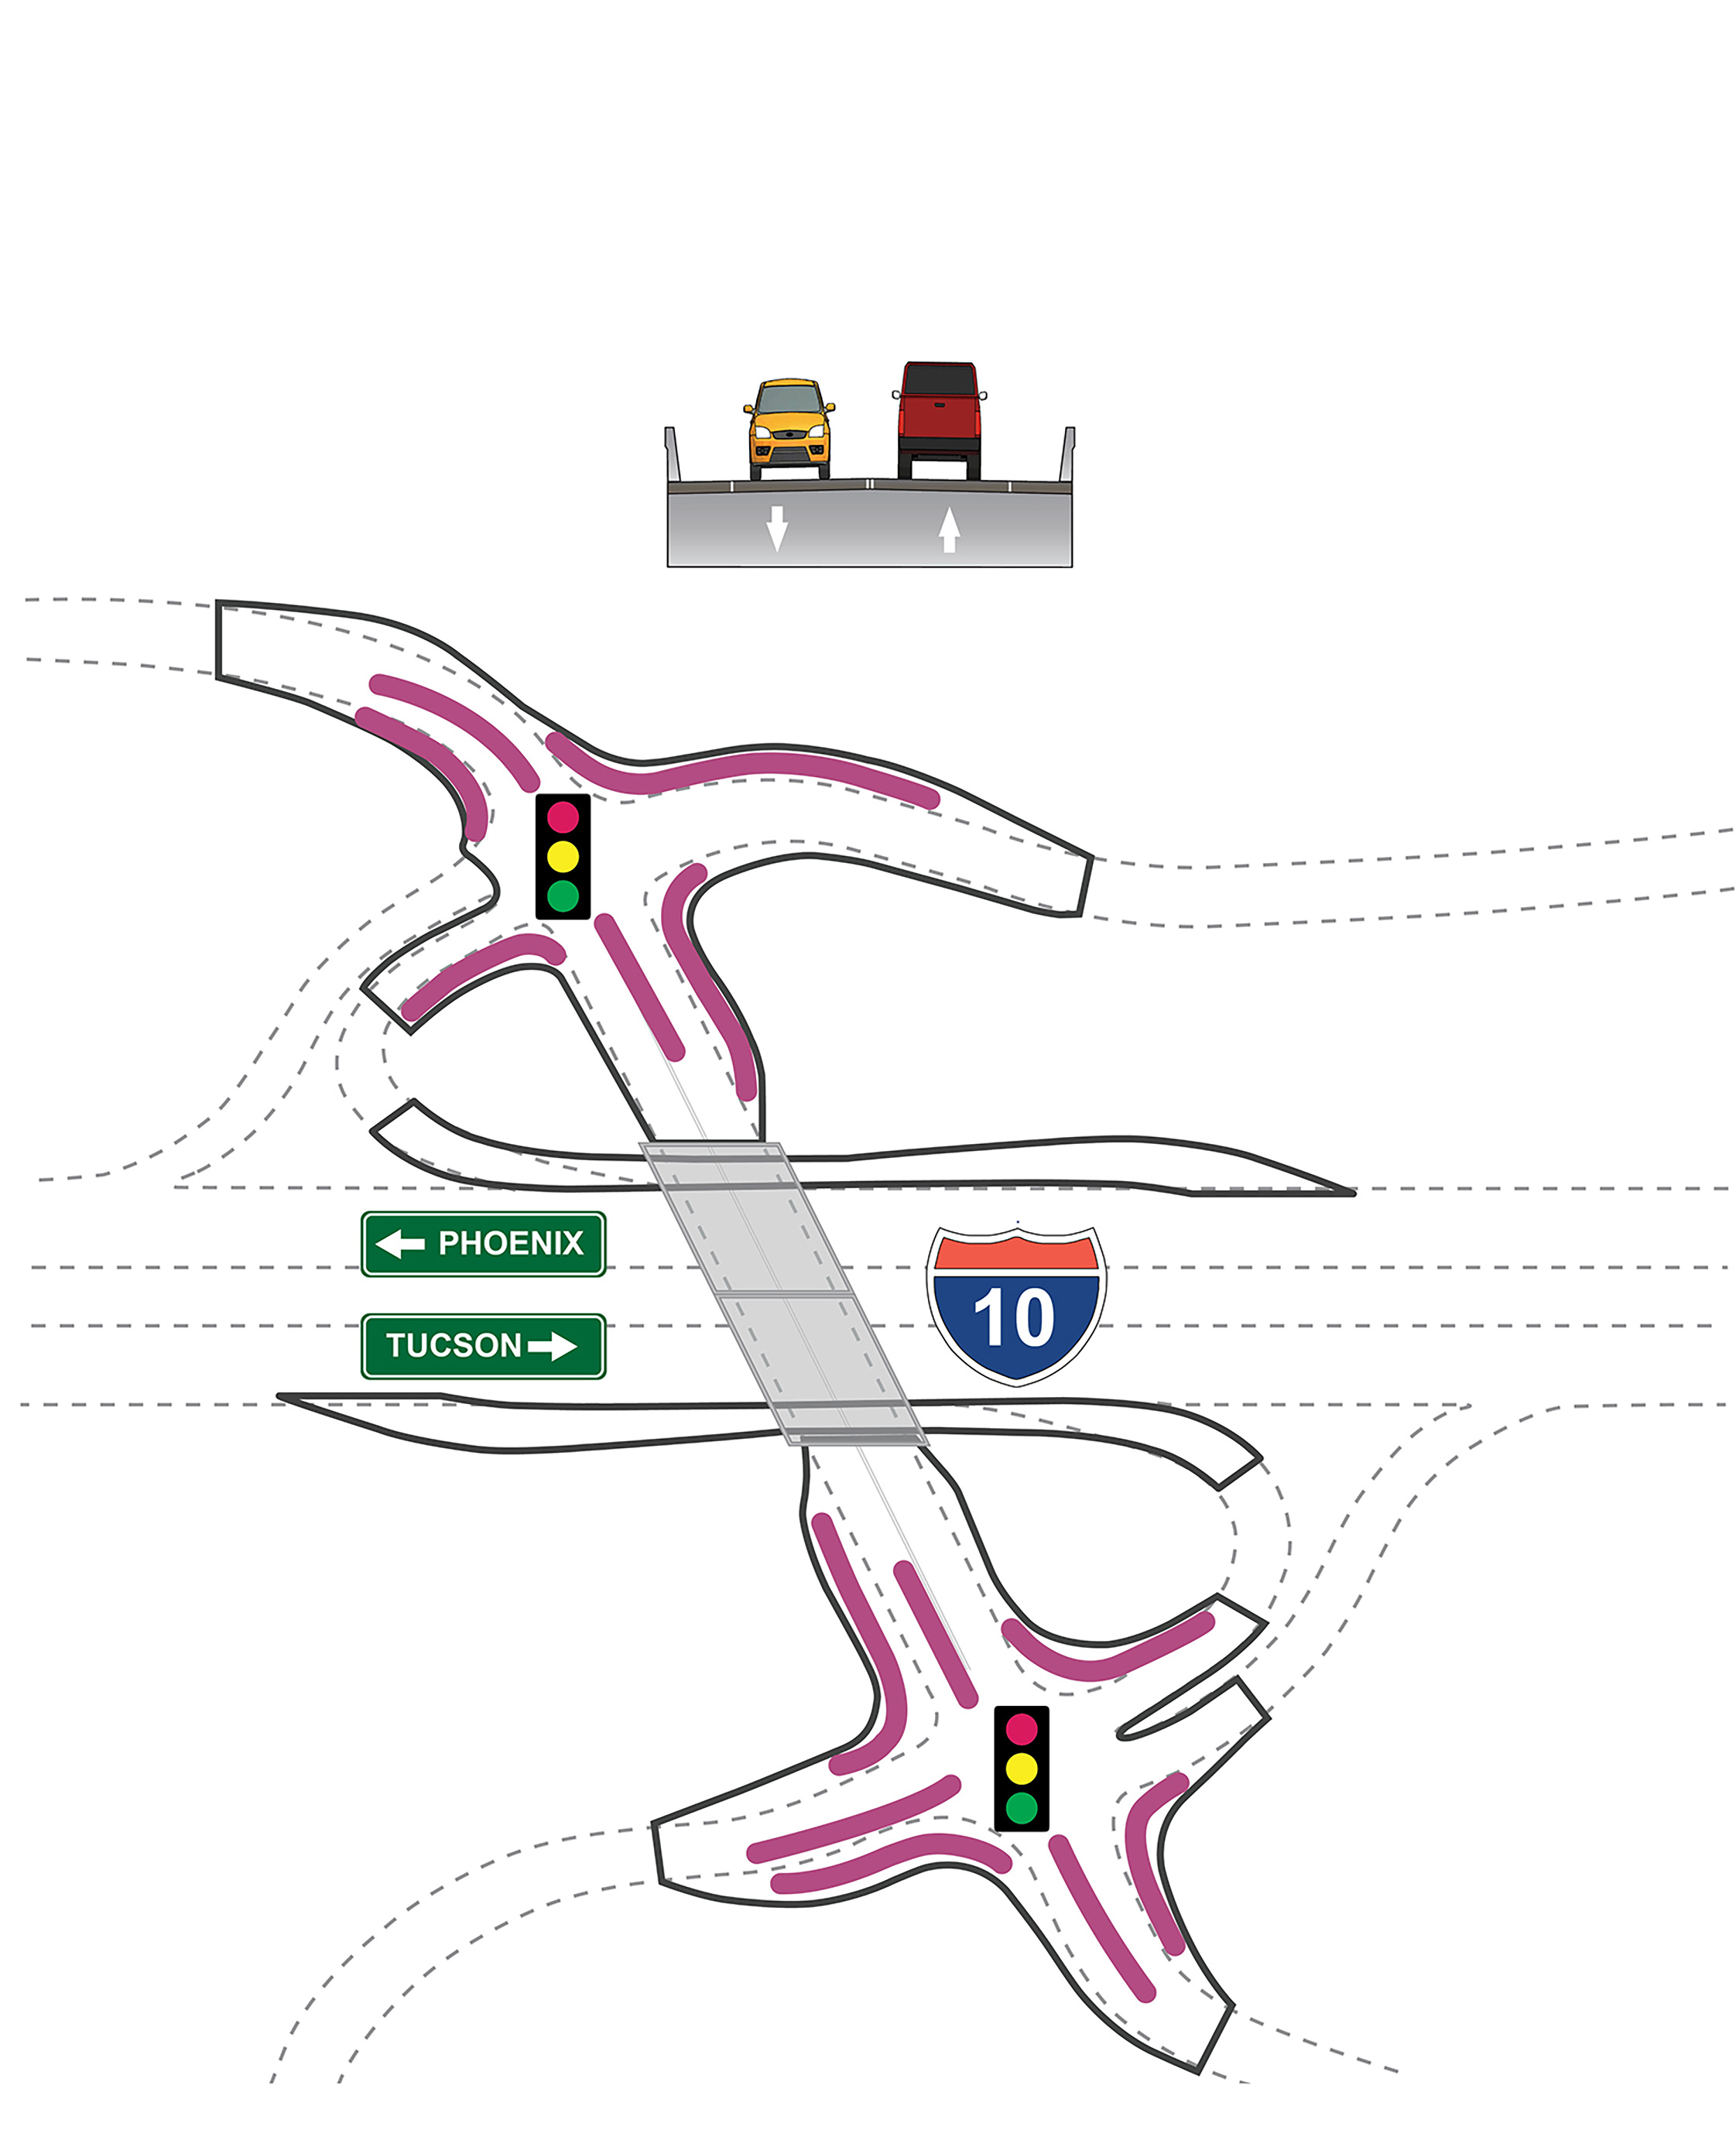 Rendering of crossroads under option 2